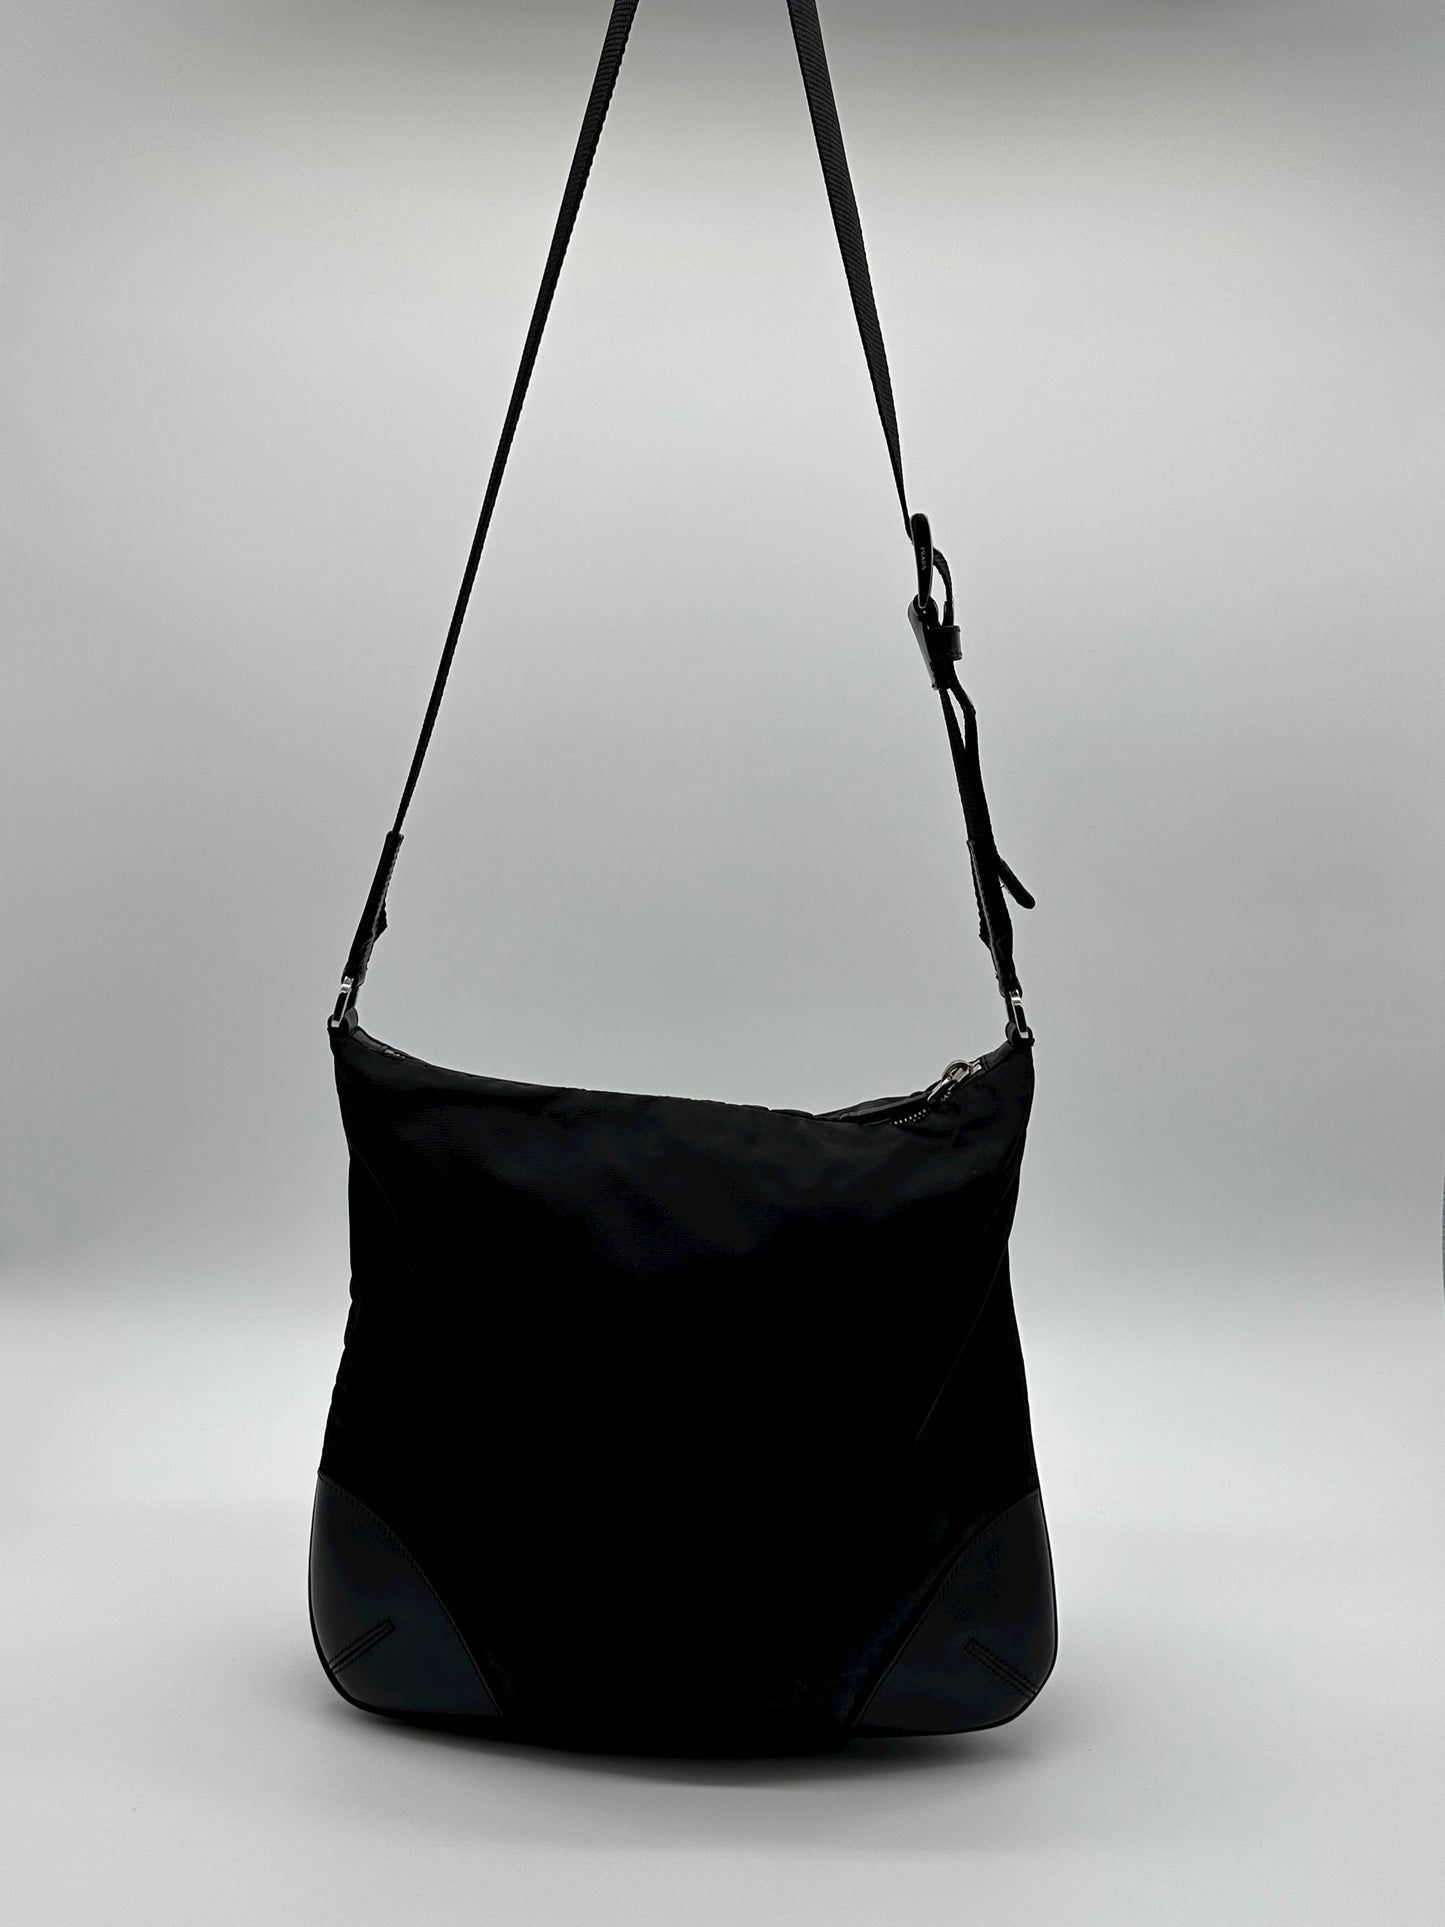 Vintage black prada messenger bag